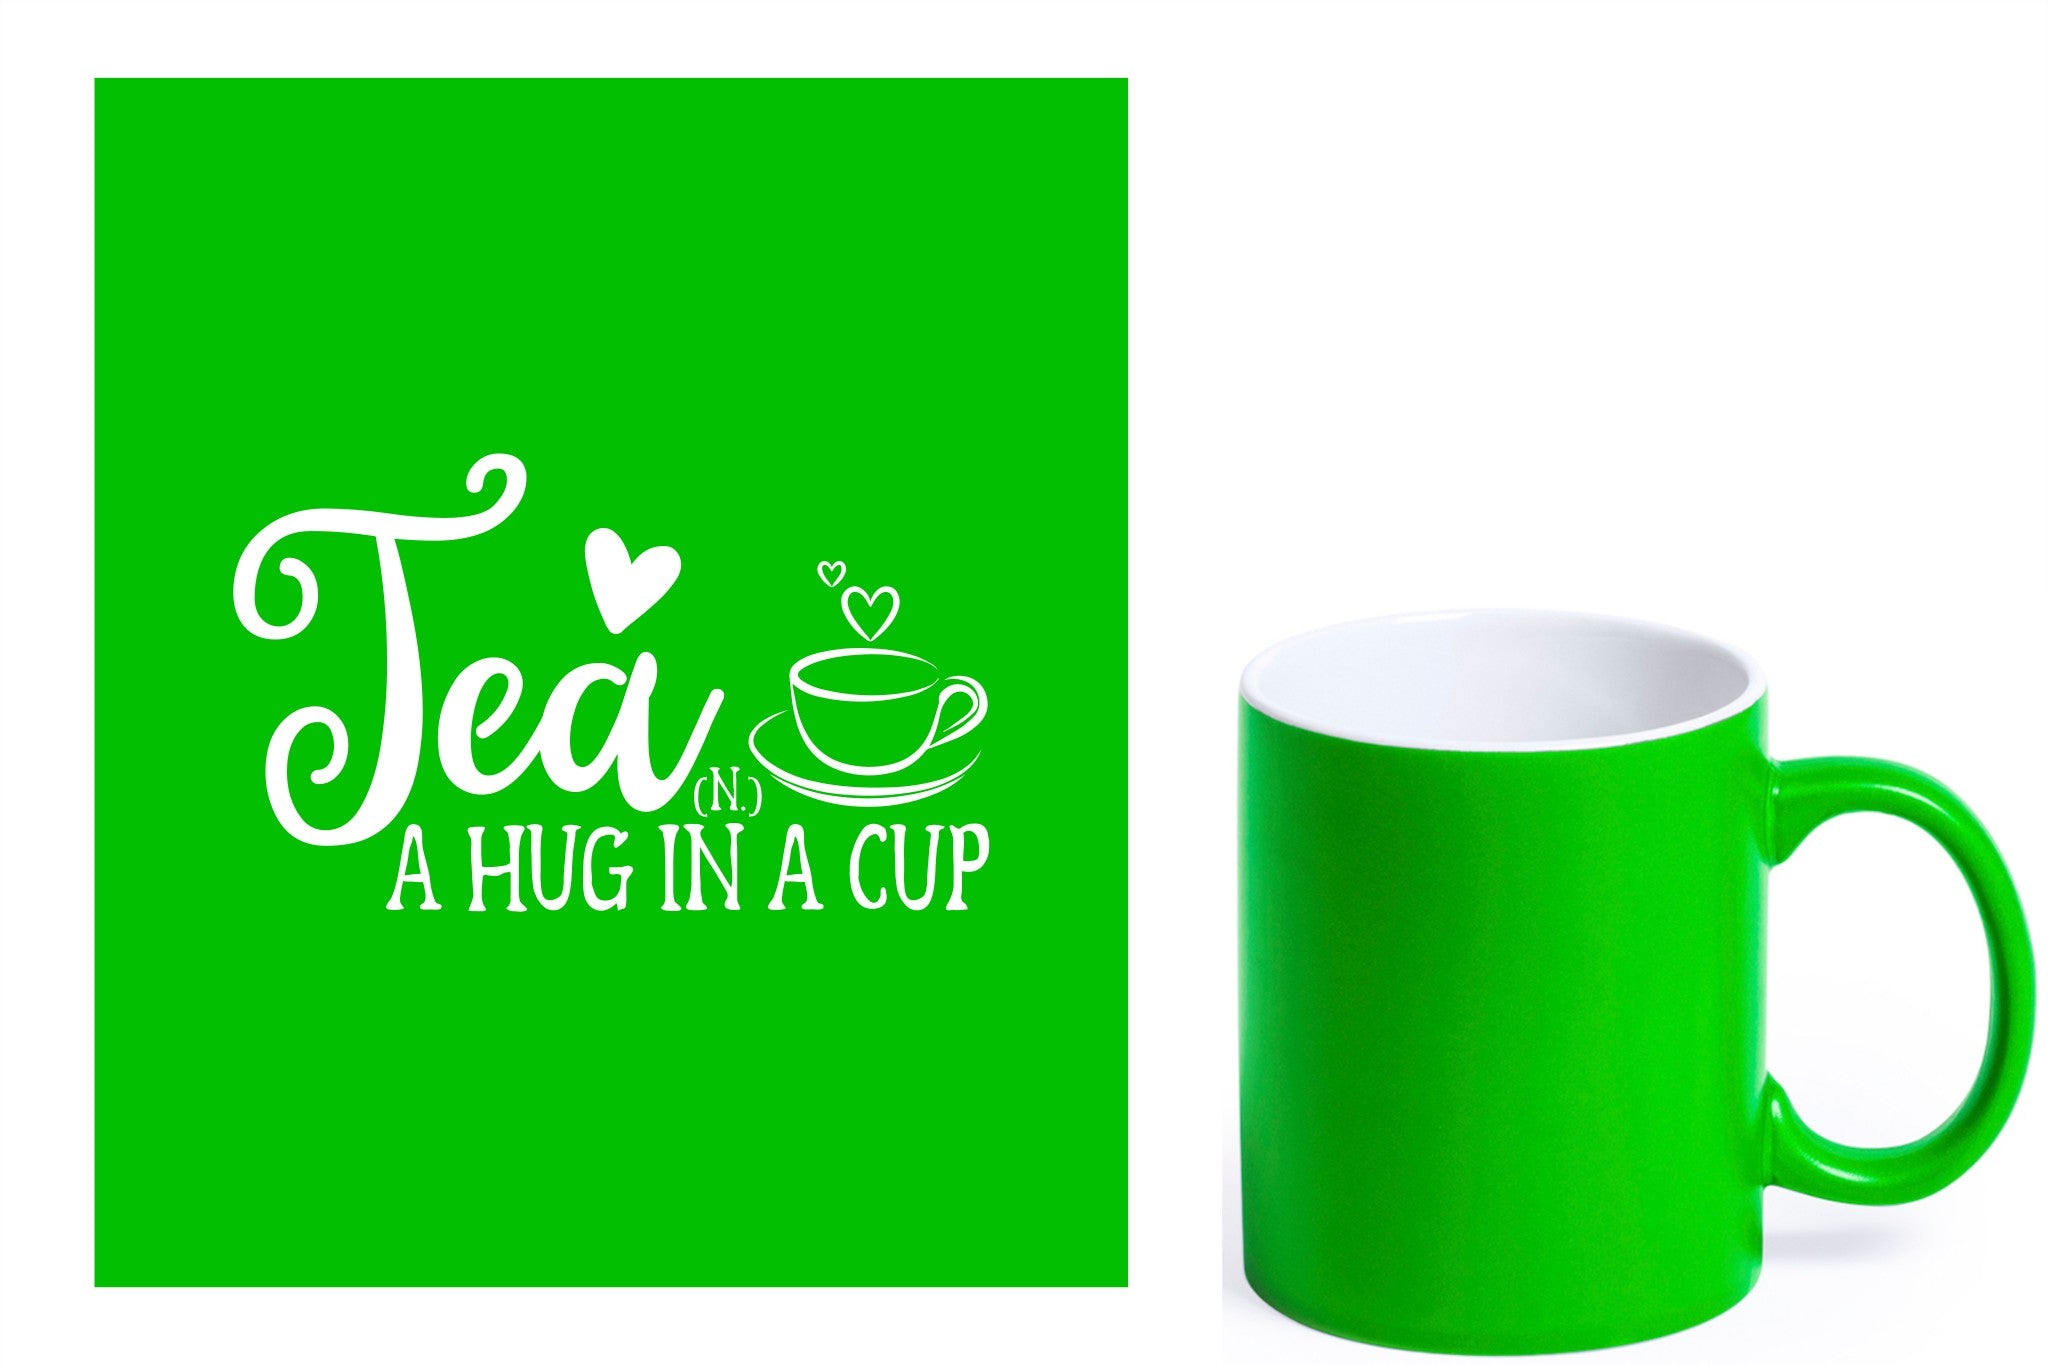 groene keramische mok met witte gravure  'Tea and a hug in a cup'.